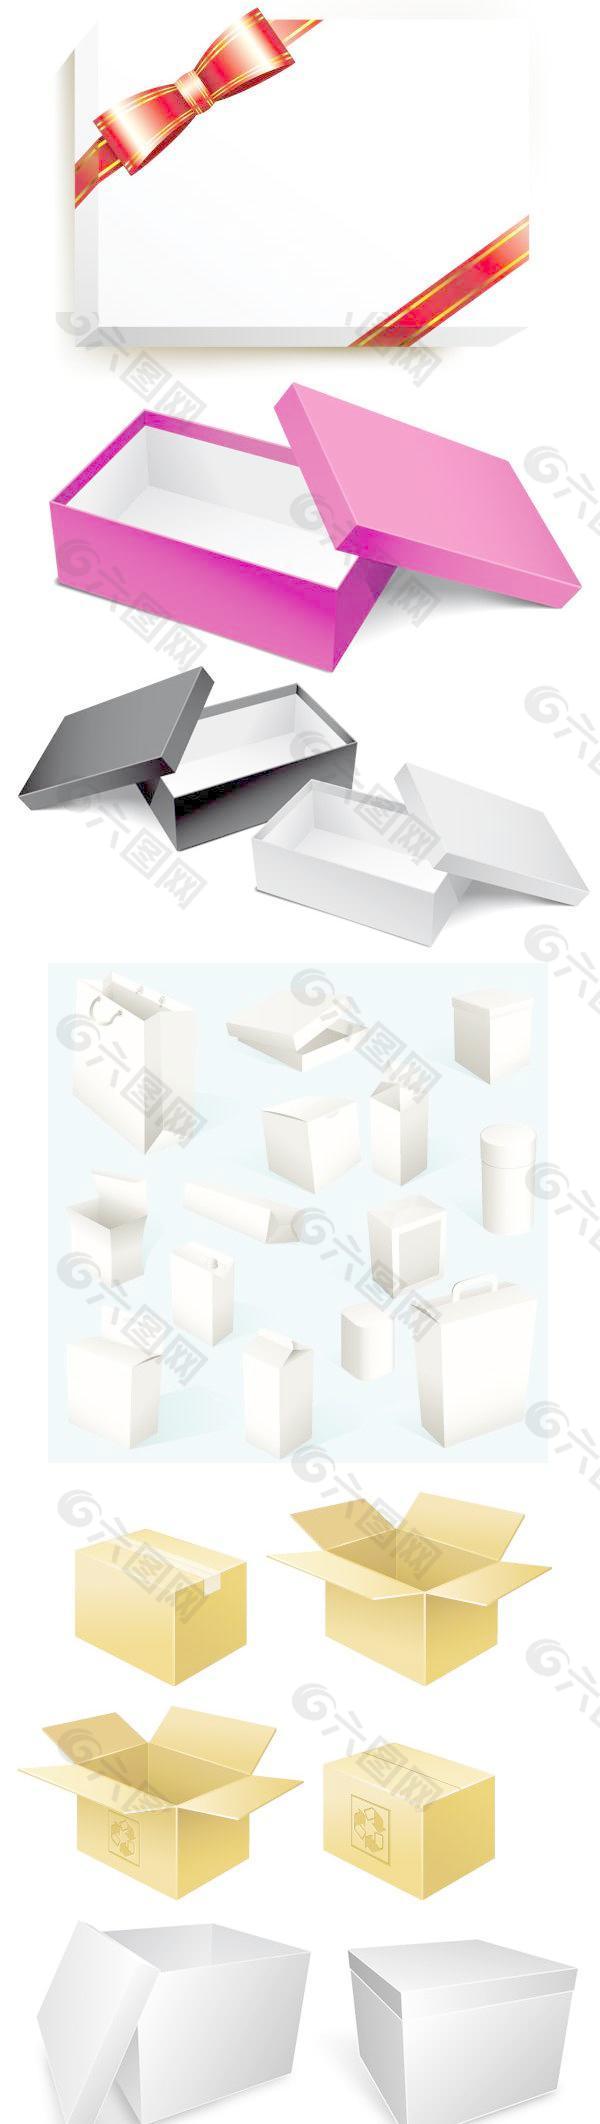 各种包装纸盒矢量素材